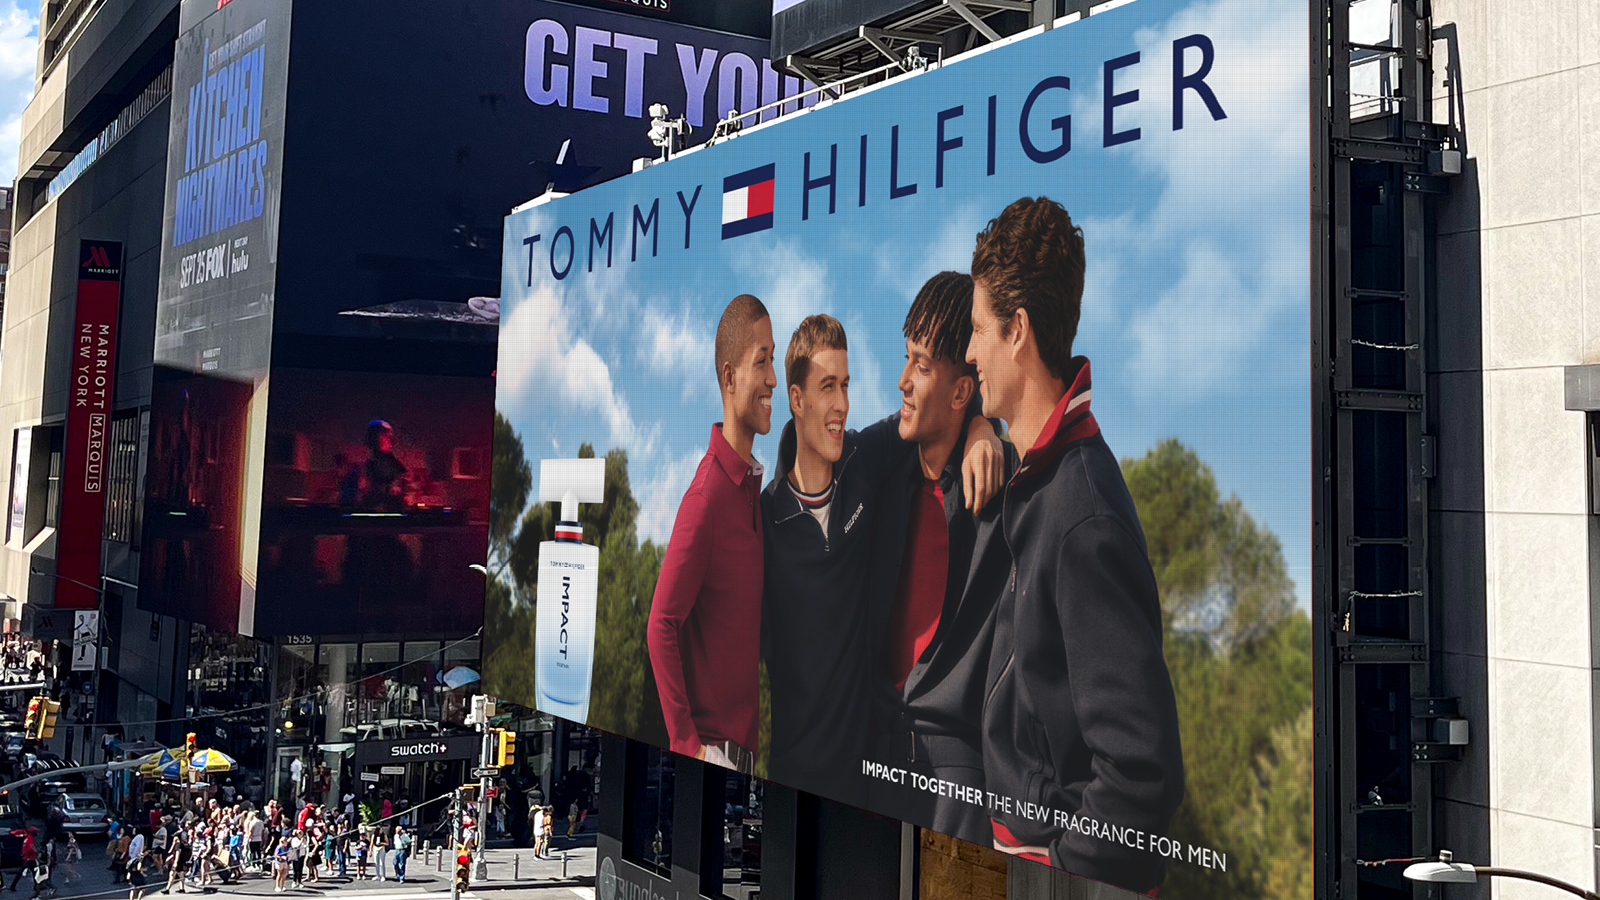 Les Gens & Vous lance le nouveau parfum Tommy Hilfiger